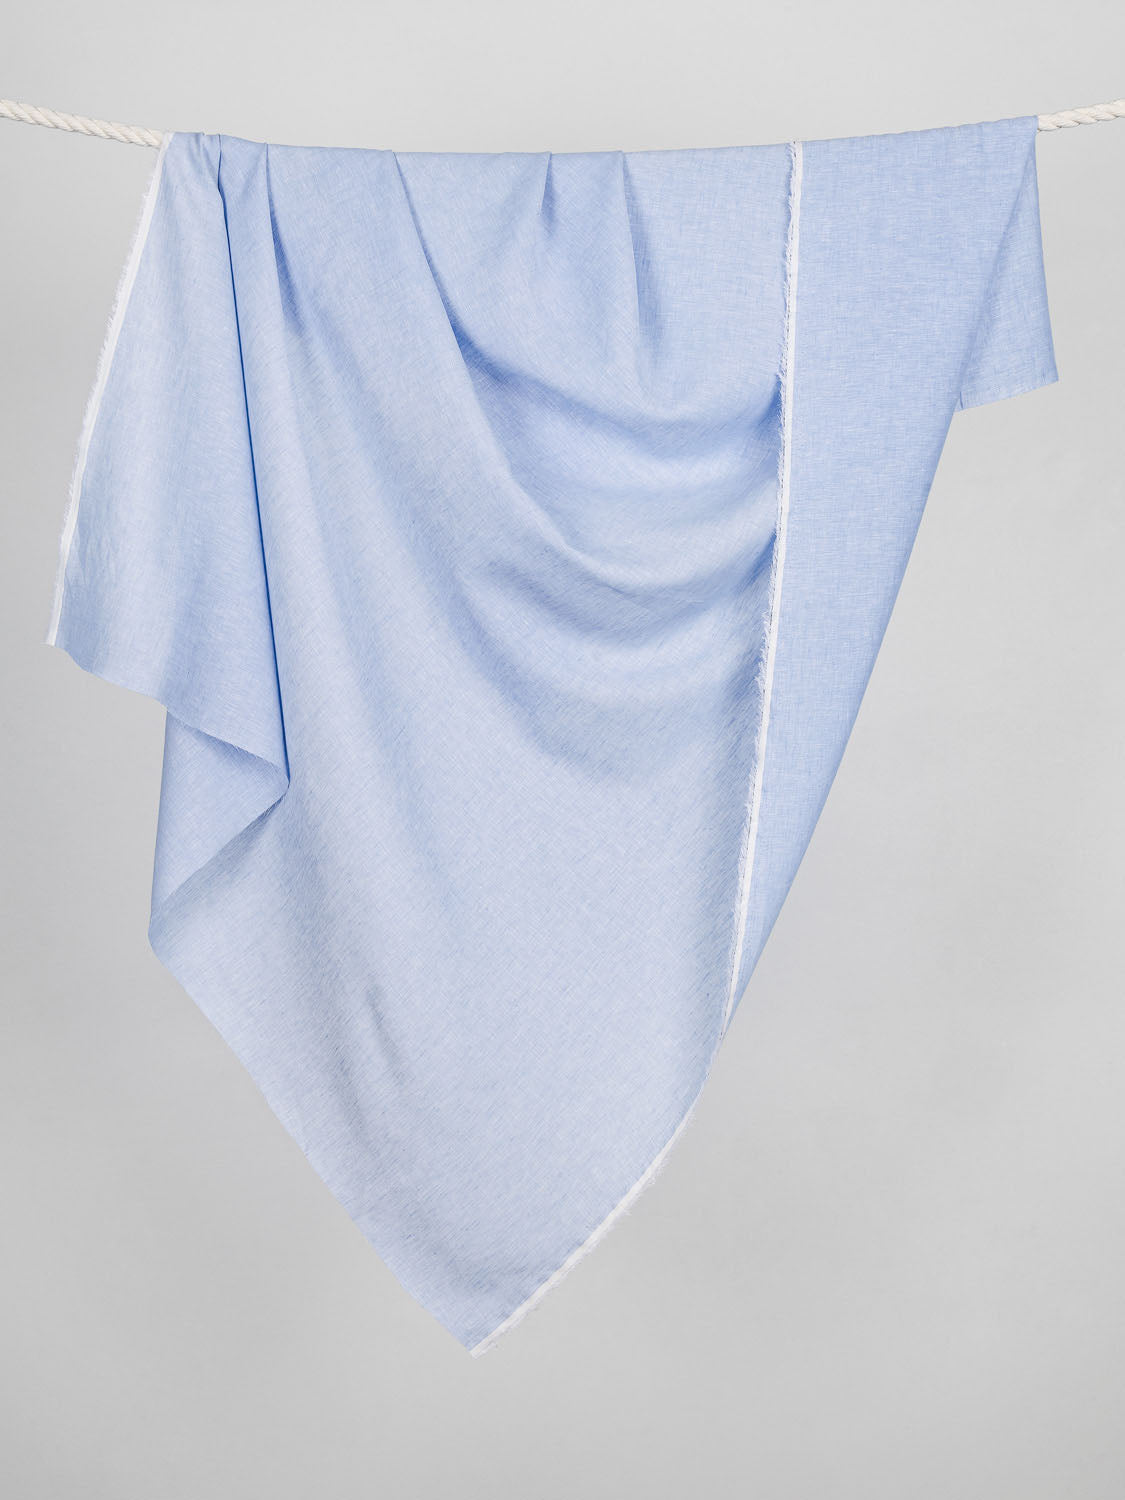 F-LIN025-003-Yarn-Dyed-Chambray-Linen-Powder-Blue-Core-Fabrics-draped.jpg